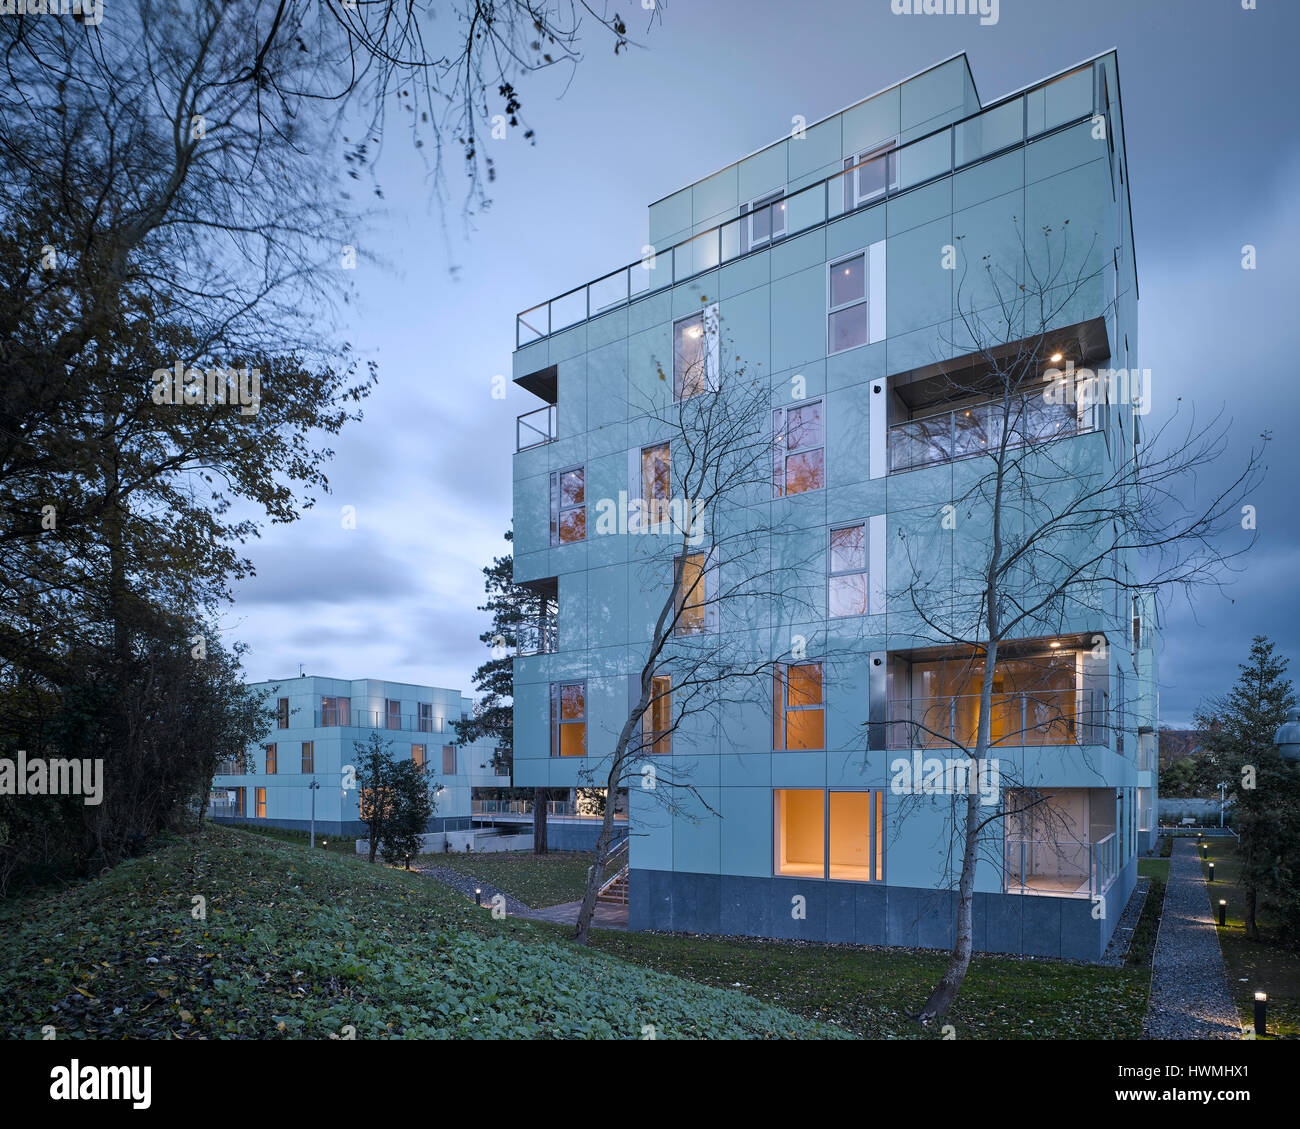 Abenddämmerung Blick von außen zeigt Gehweg und Innenraum beleuchtet. Dunluce Apartments, Ballsbridge, Irland. Architekt: Derek Tynan Architekten, 2016. Stockfoto